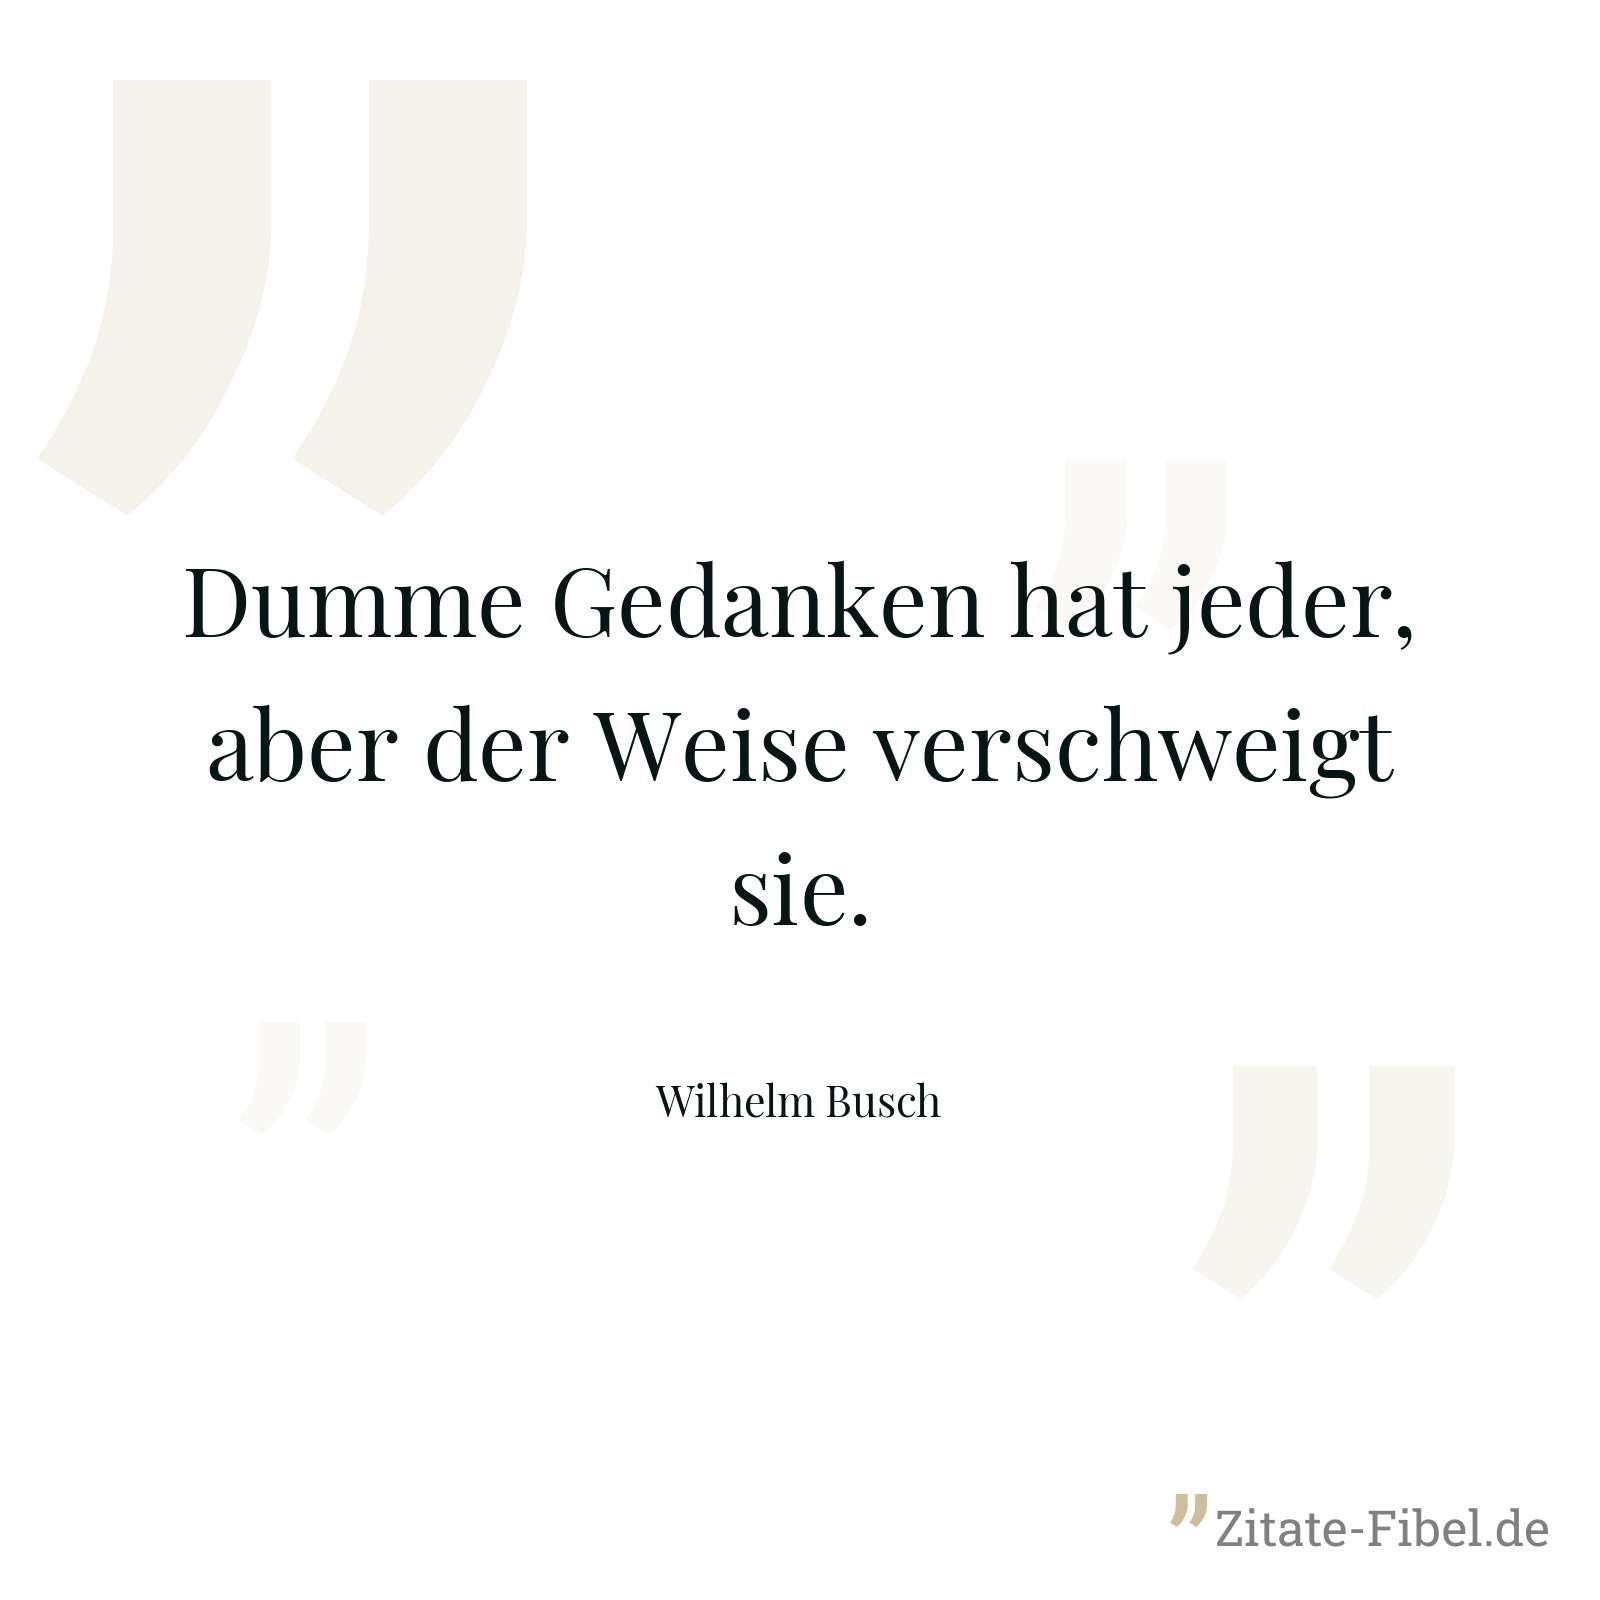 Dumme Gedanken hat jeder, aber der Weise verschweigt sie. - Wilhelm Busch